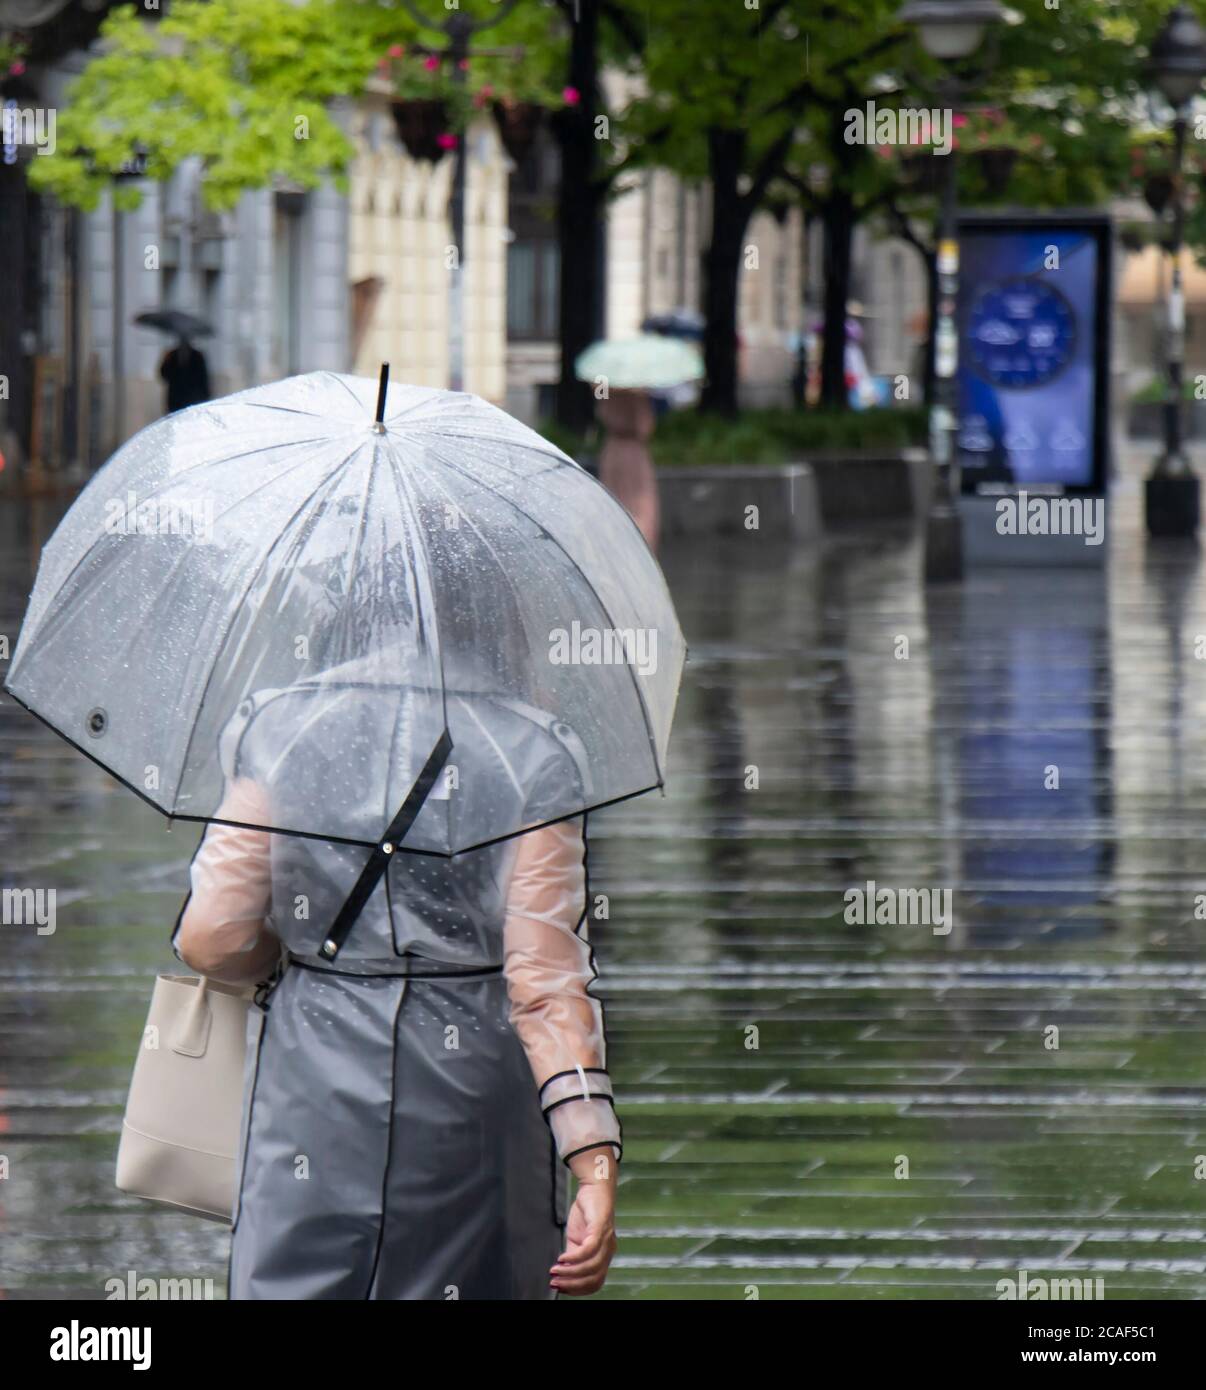 Frau in transparentem Regenmantel, die an einem regnerischen Sommertag in Belgrad, Serbien, unter dem Regenschirm läuft Stockfoto